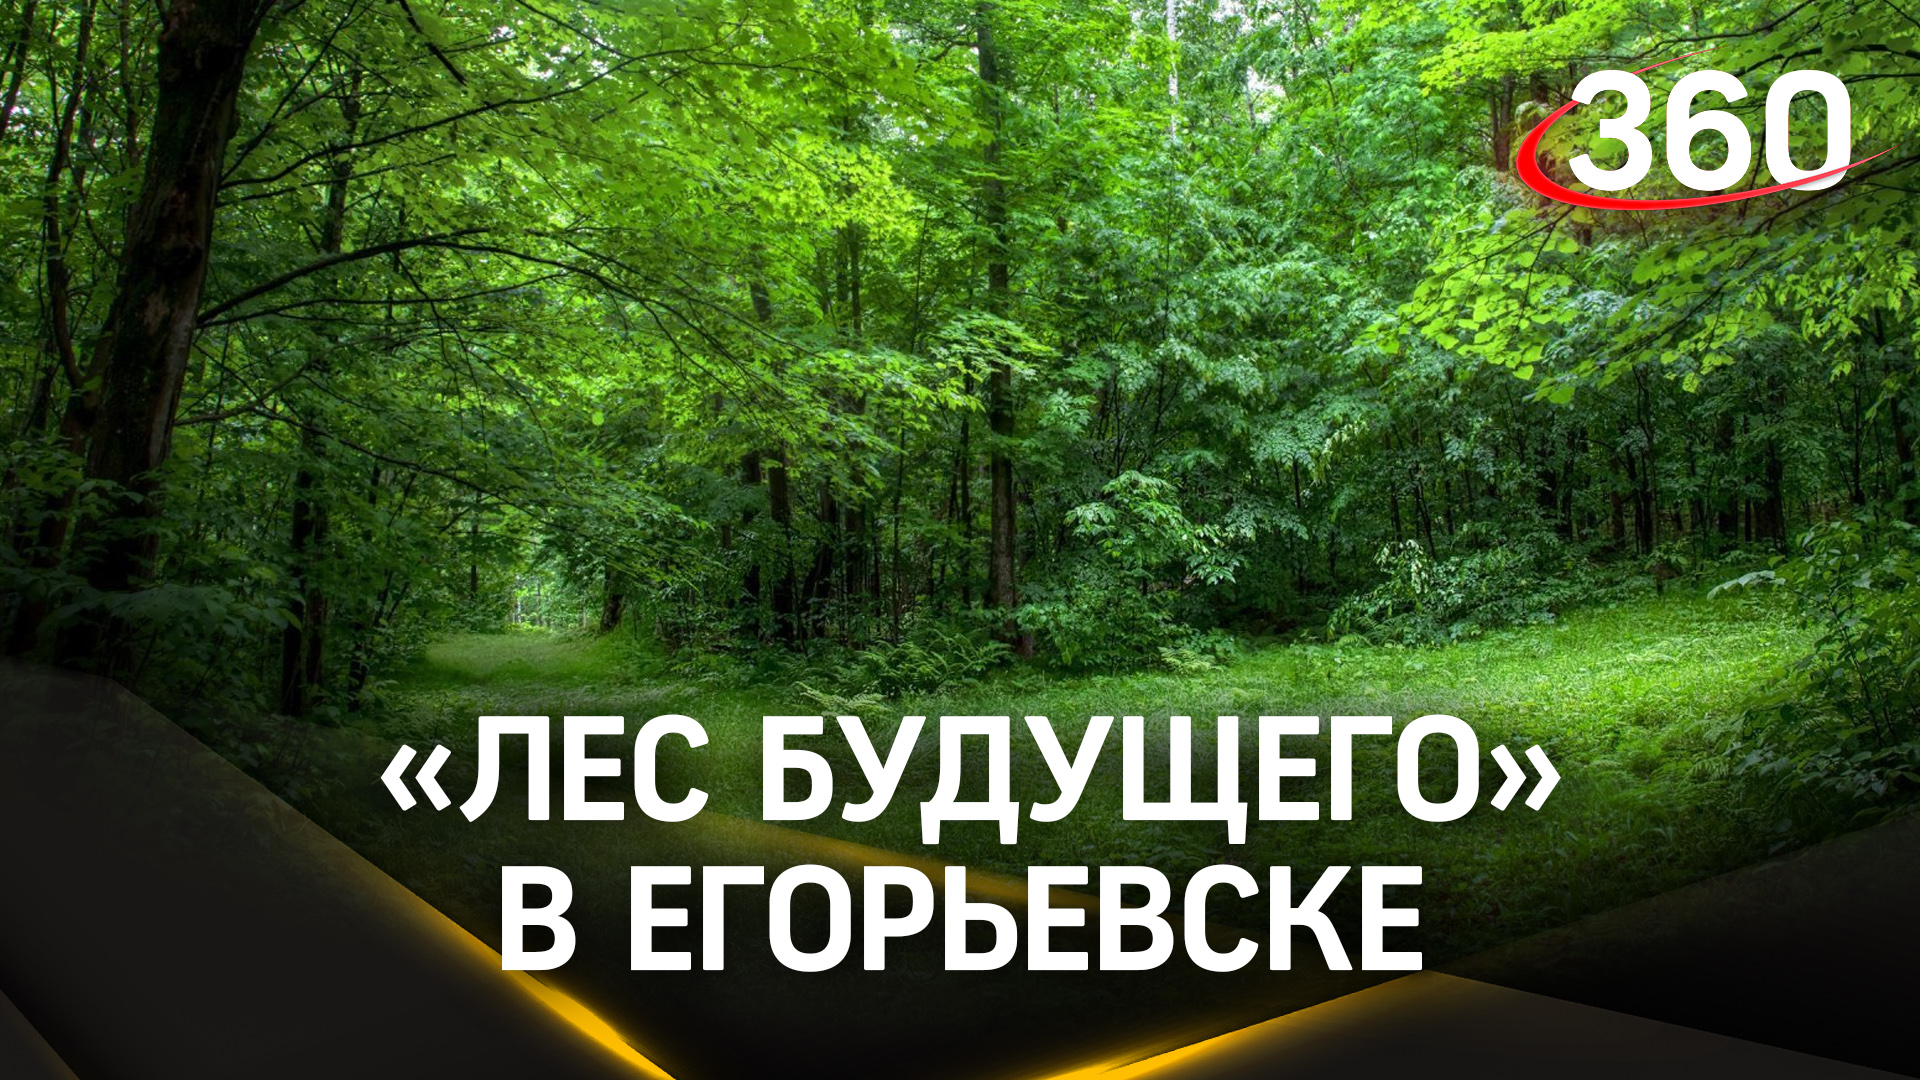 Егорьевск принял участие в акции «Лес будущего»